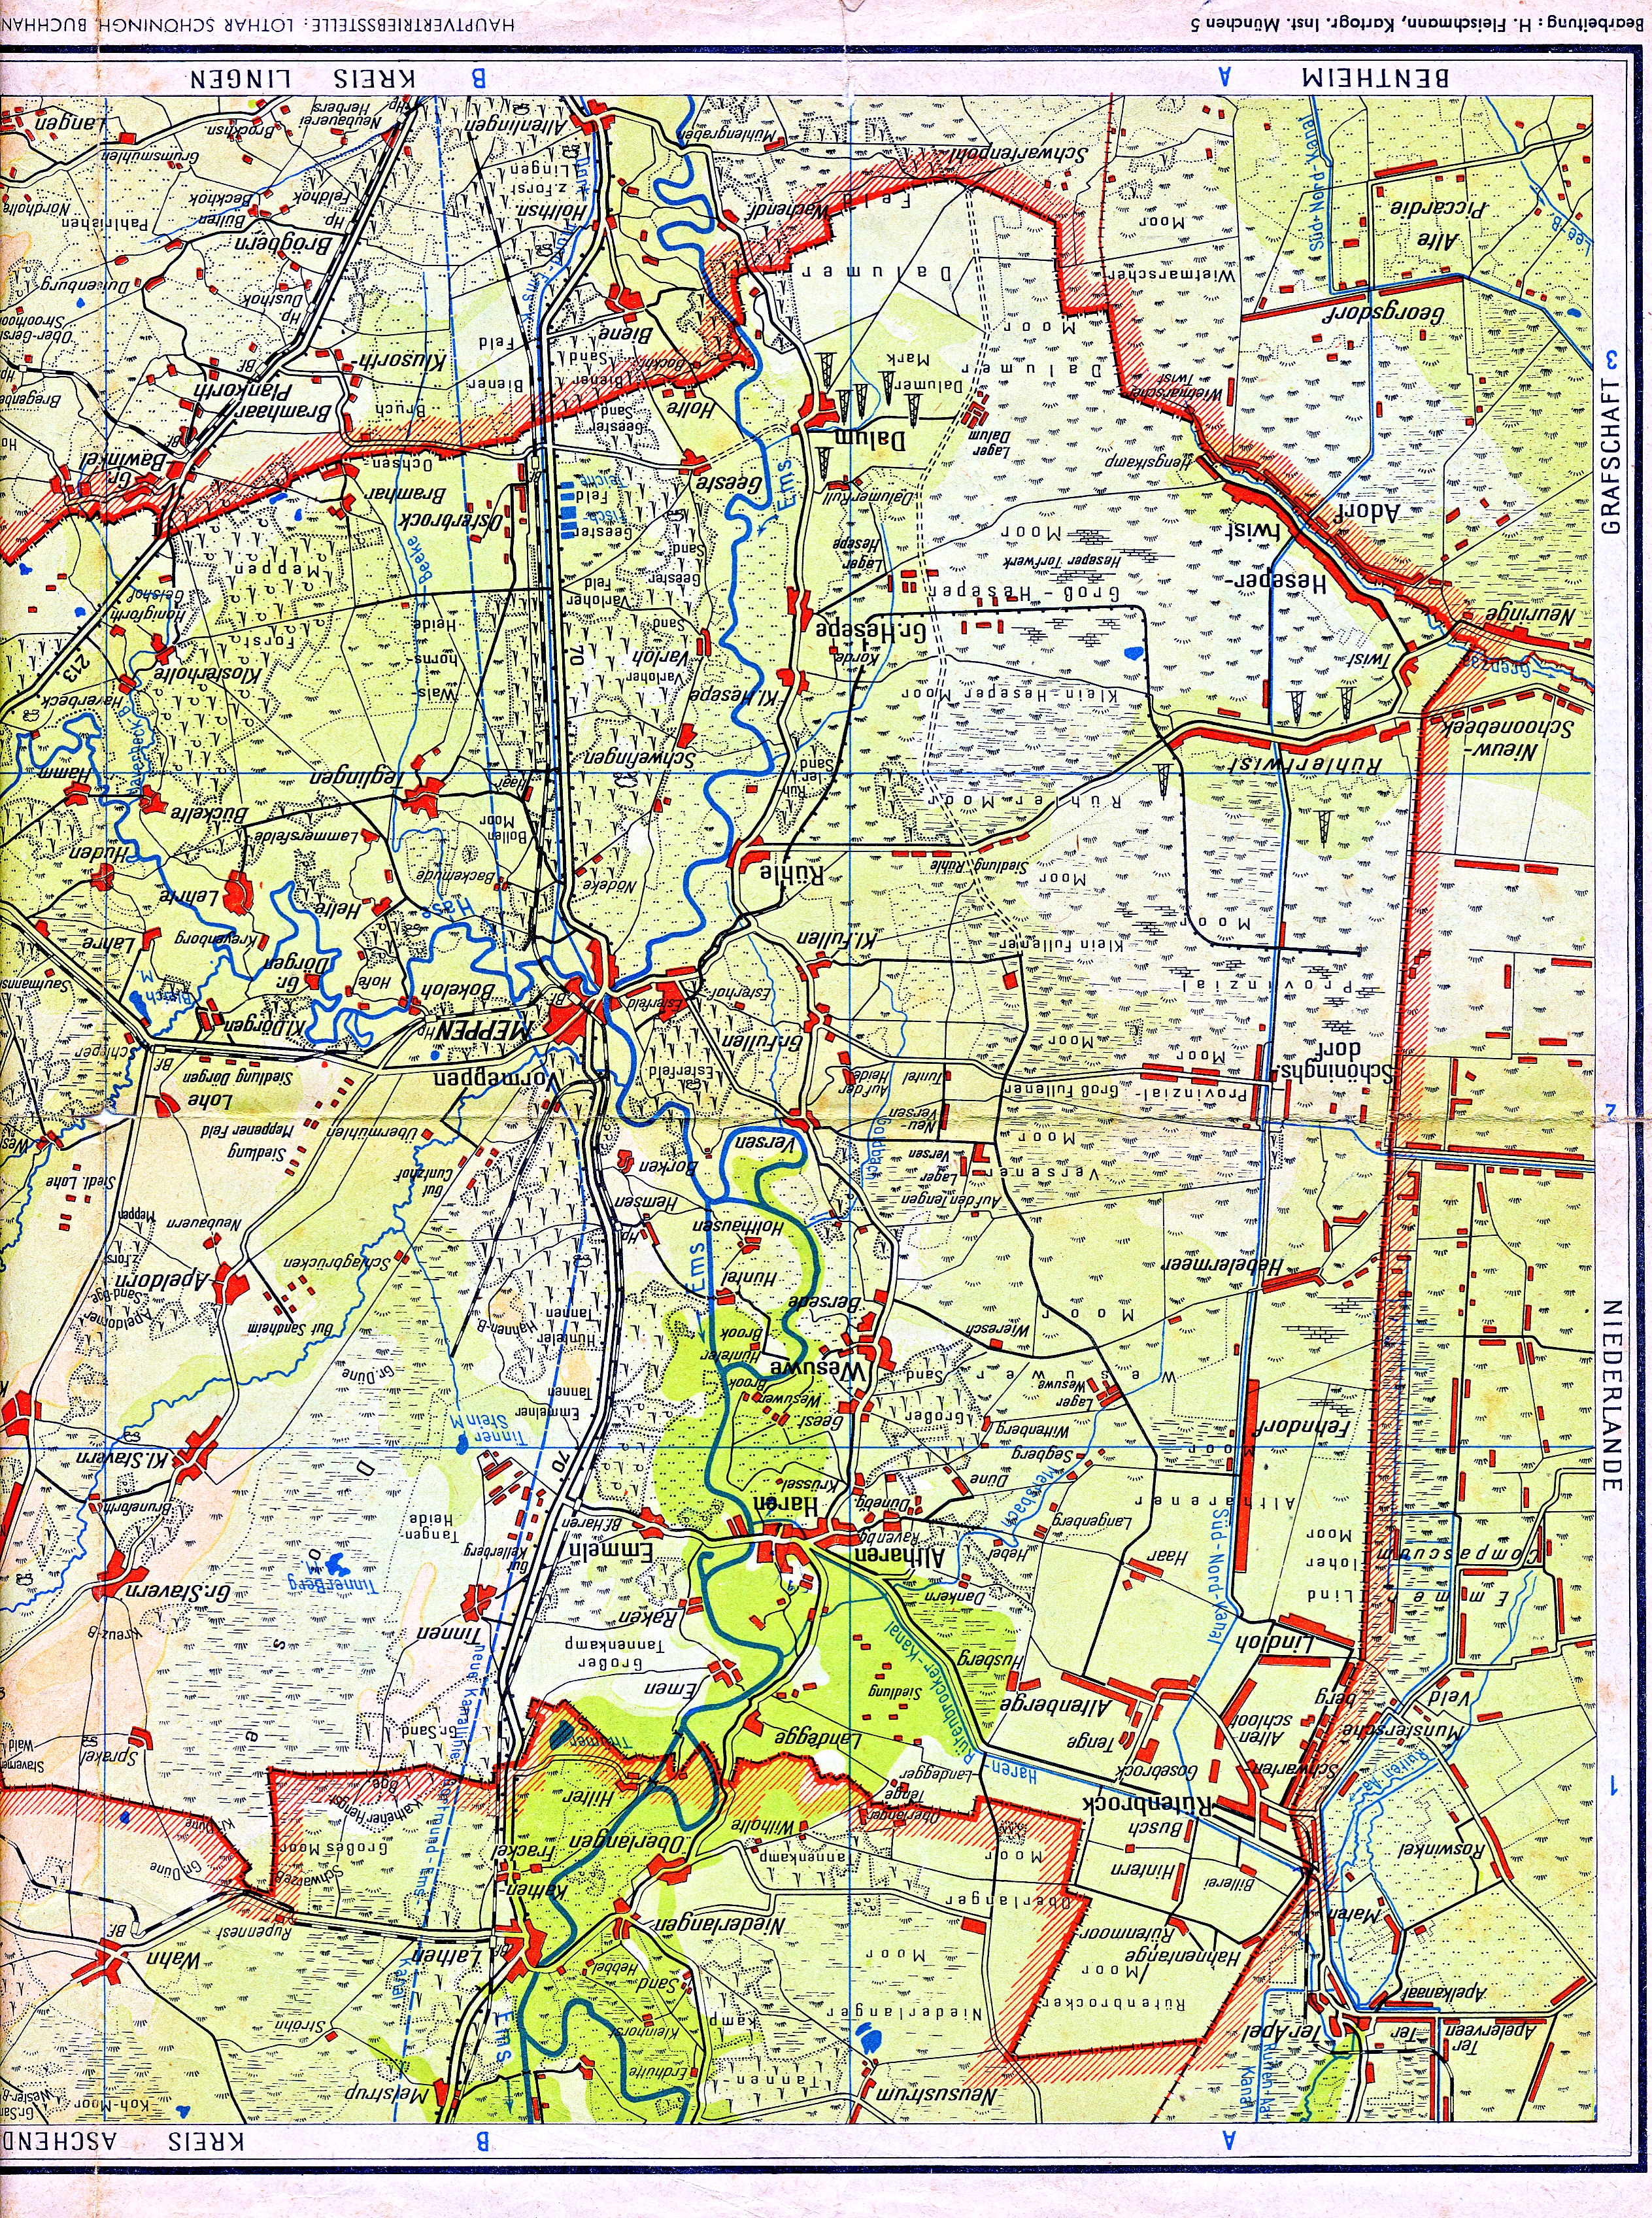 plattegrond1950-kreis-meppen-1-150000-otto-meisners-verlag